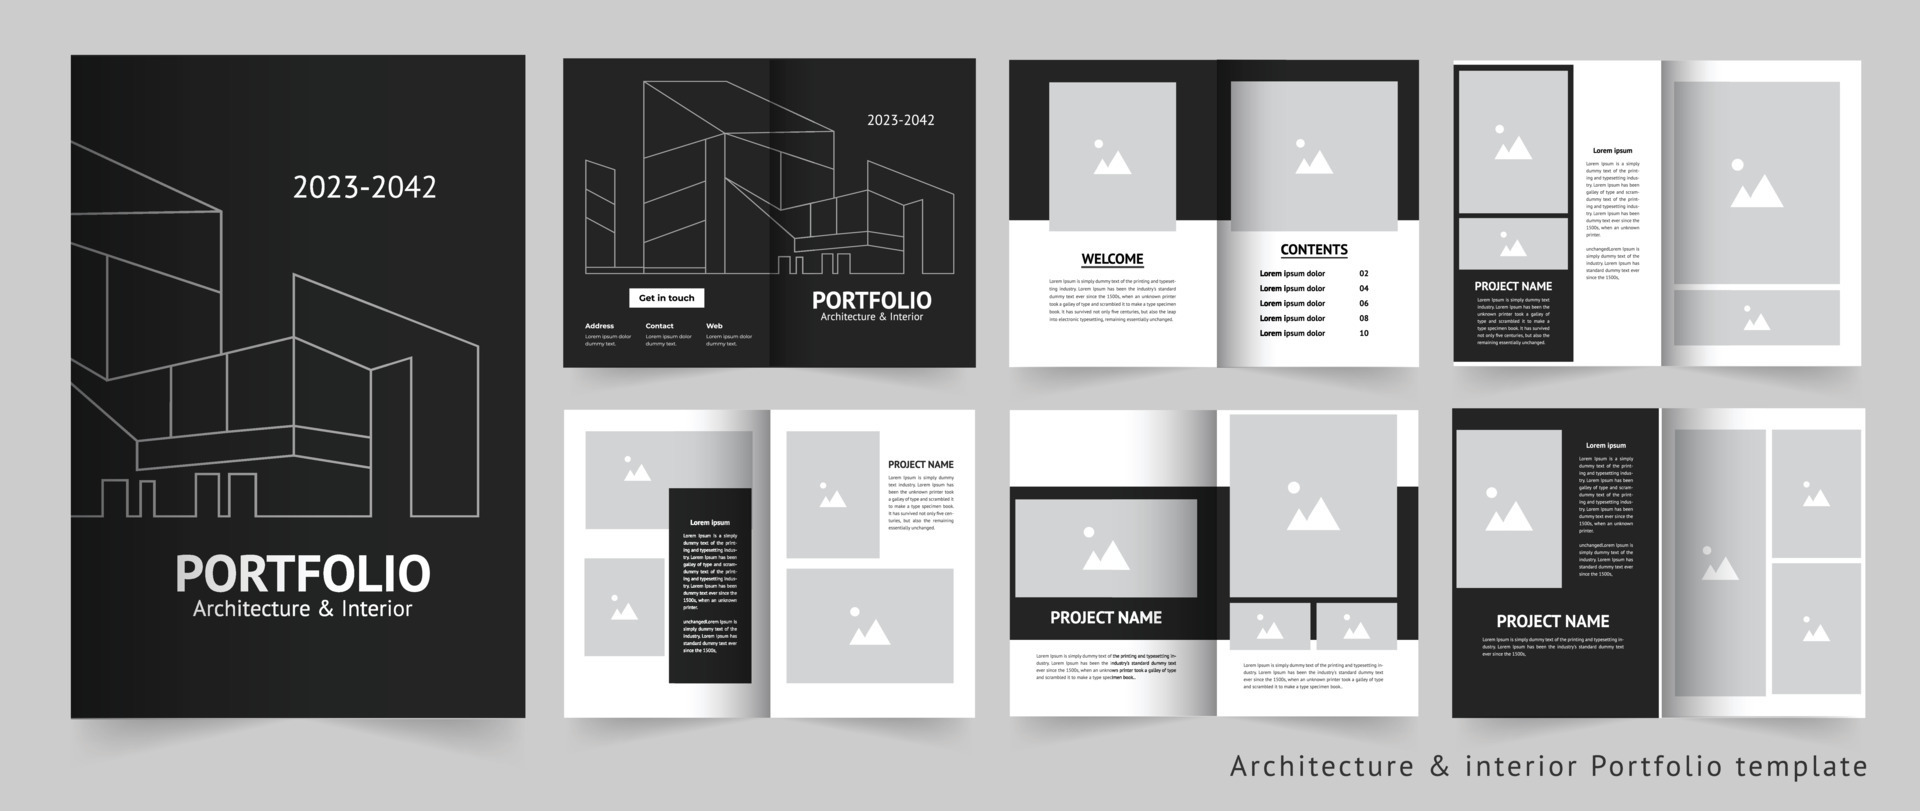 Architecture portfolio or interior portfolio or portfolio design ...